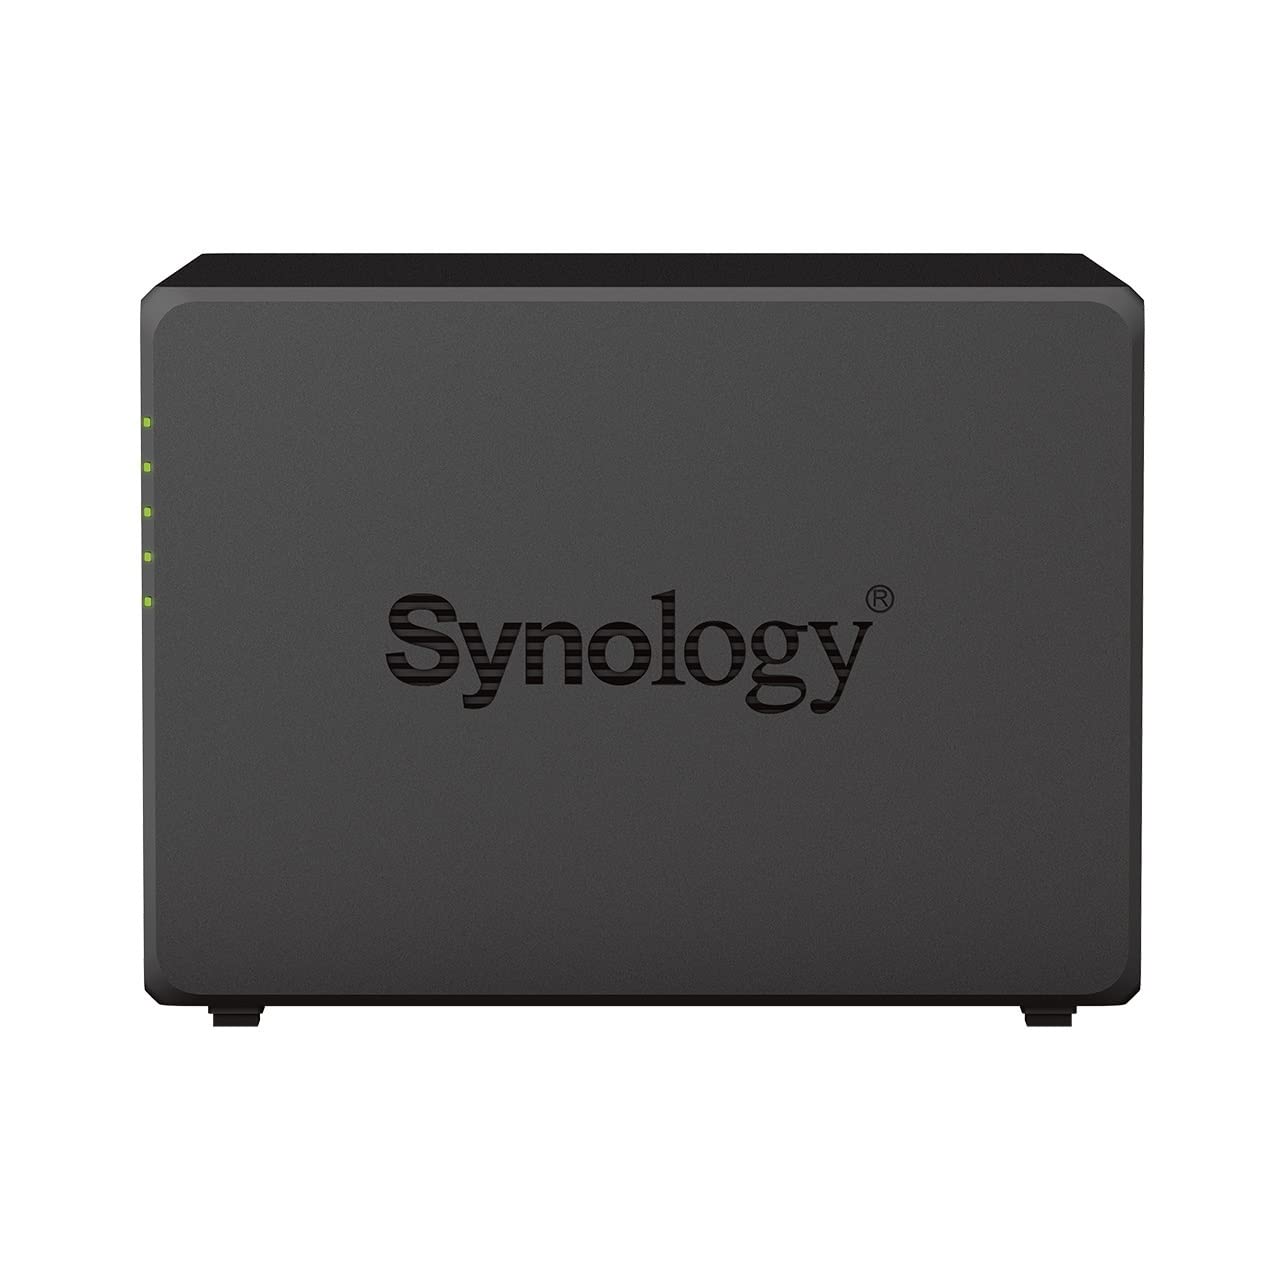 Synology DS923+ - NAS a 4 bay AMD Ryzen™ 4 thread R1600 dual-core 4GB RAM 2 porta LAN 4 dischi rigidi NAS Seagate IronWolf da 6TB